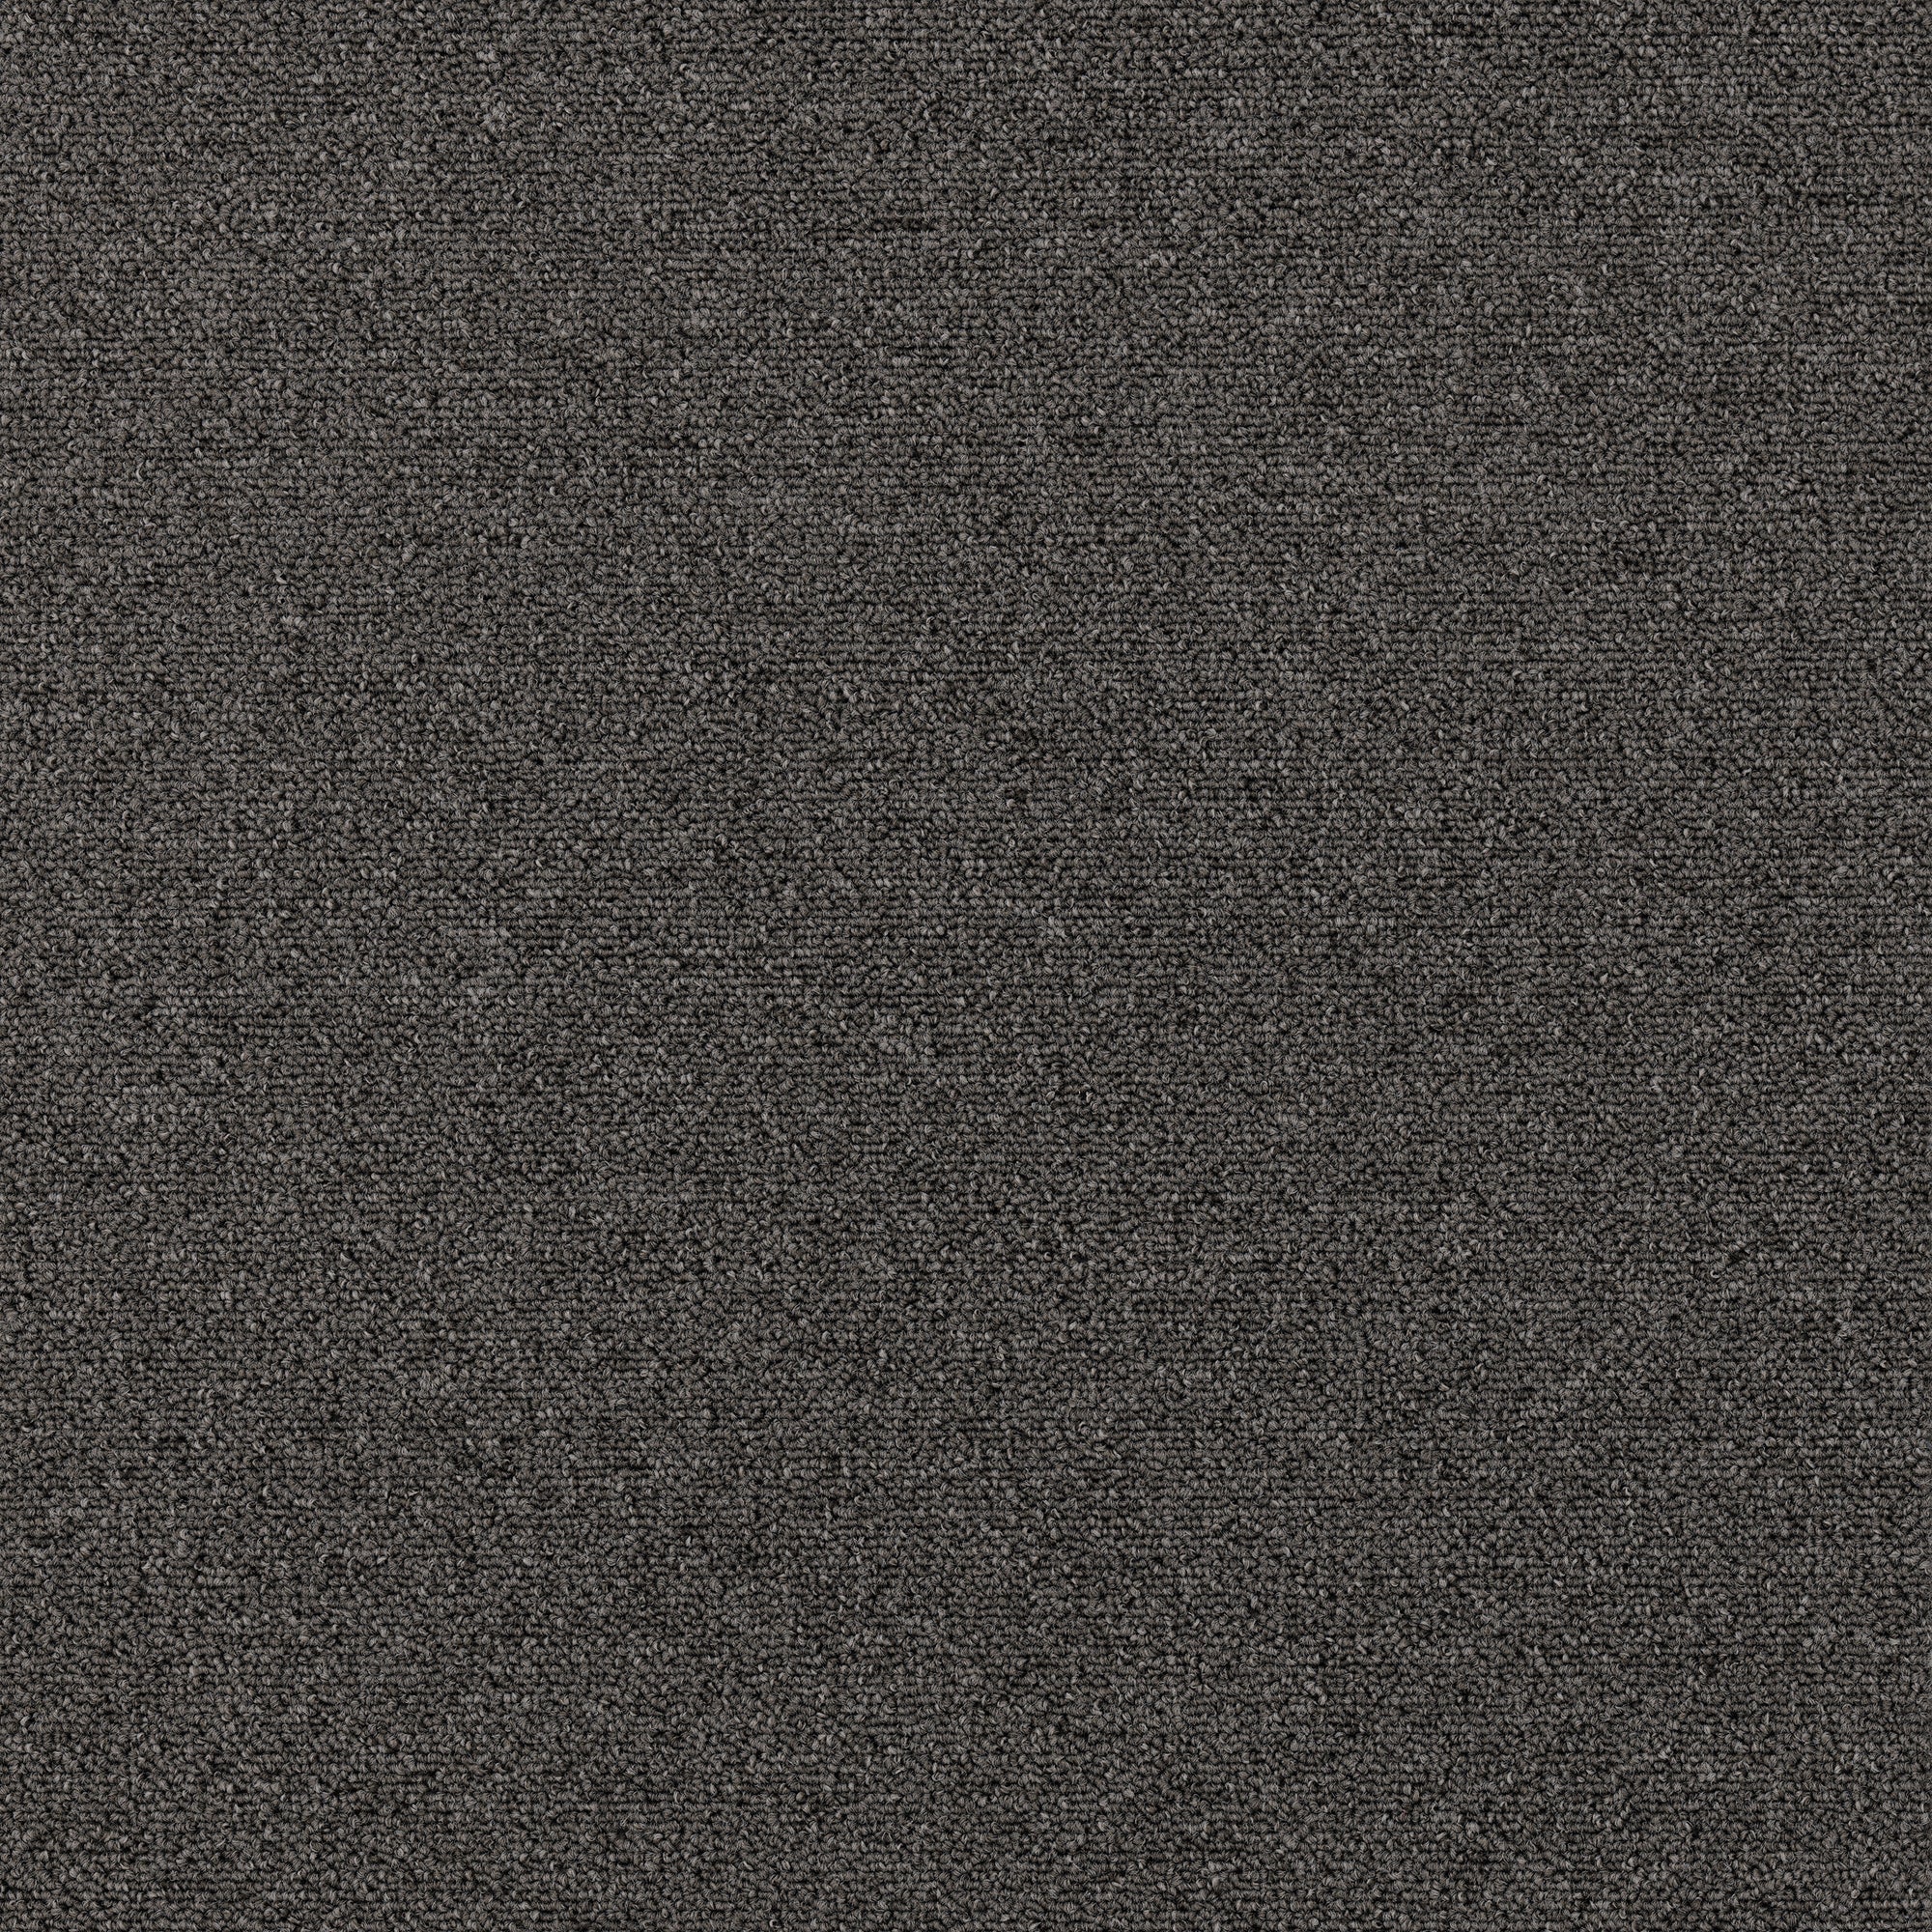 Plusfloor Rekka Ashen Grey carpet tiles for offices 100% Nylon